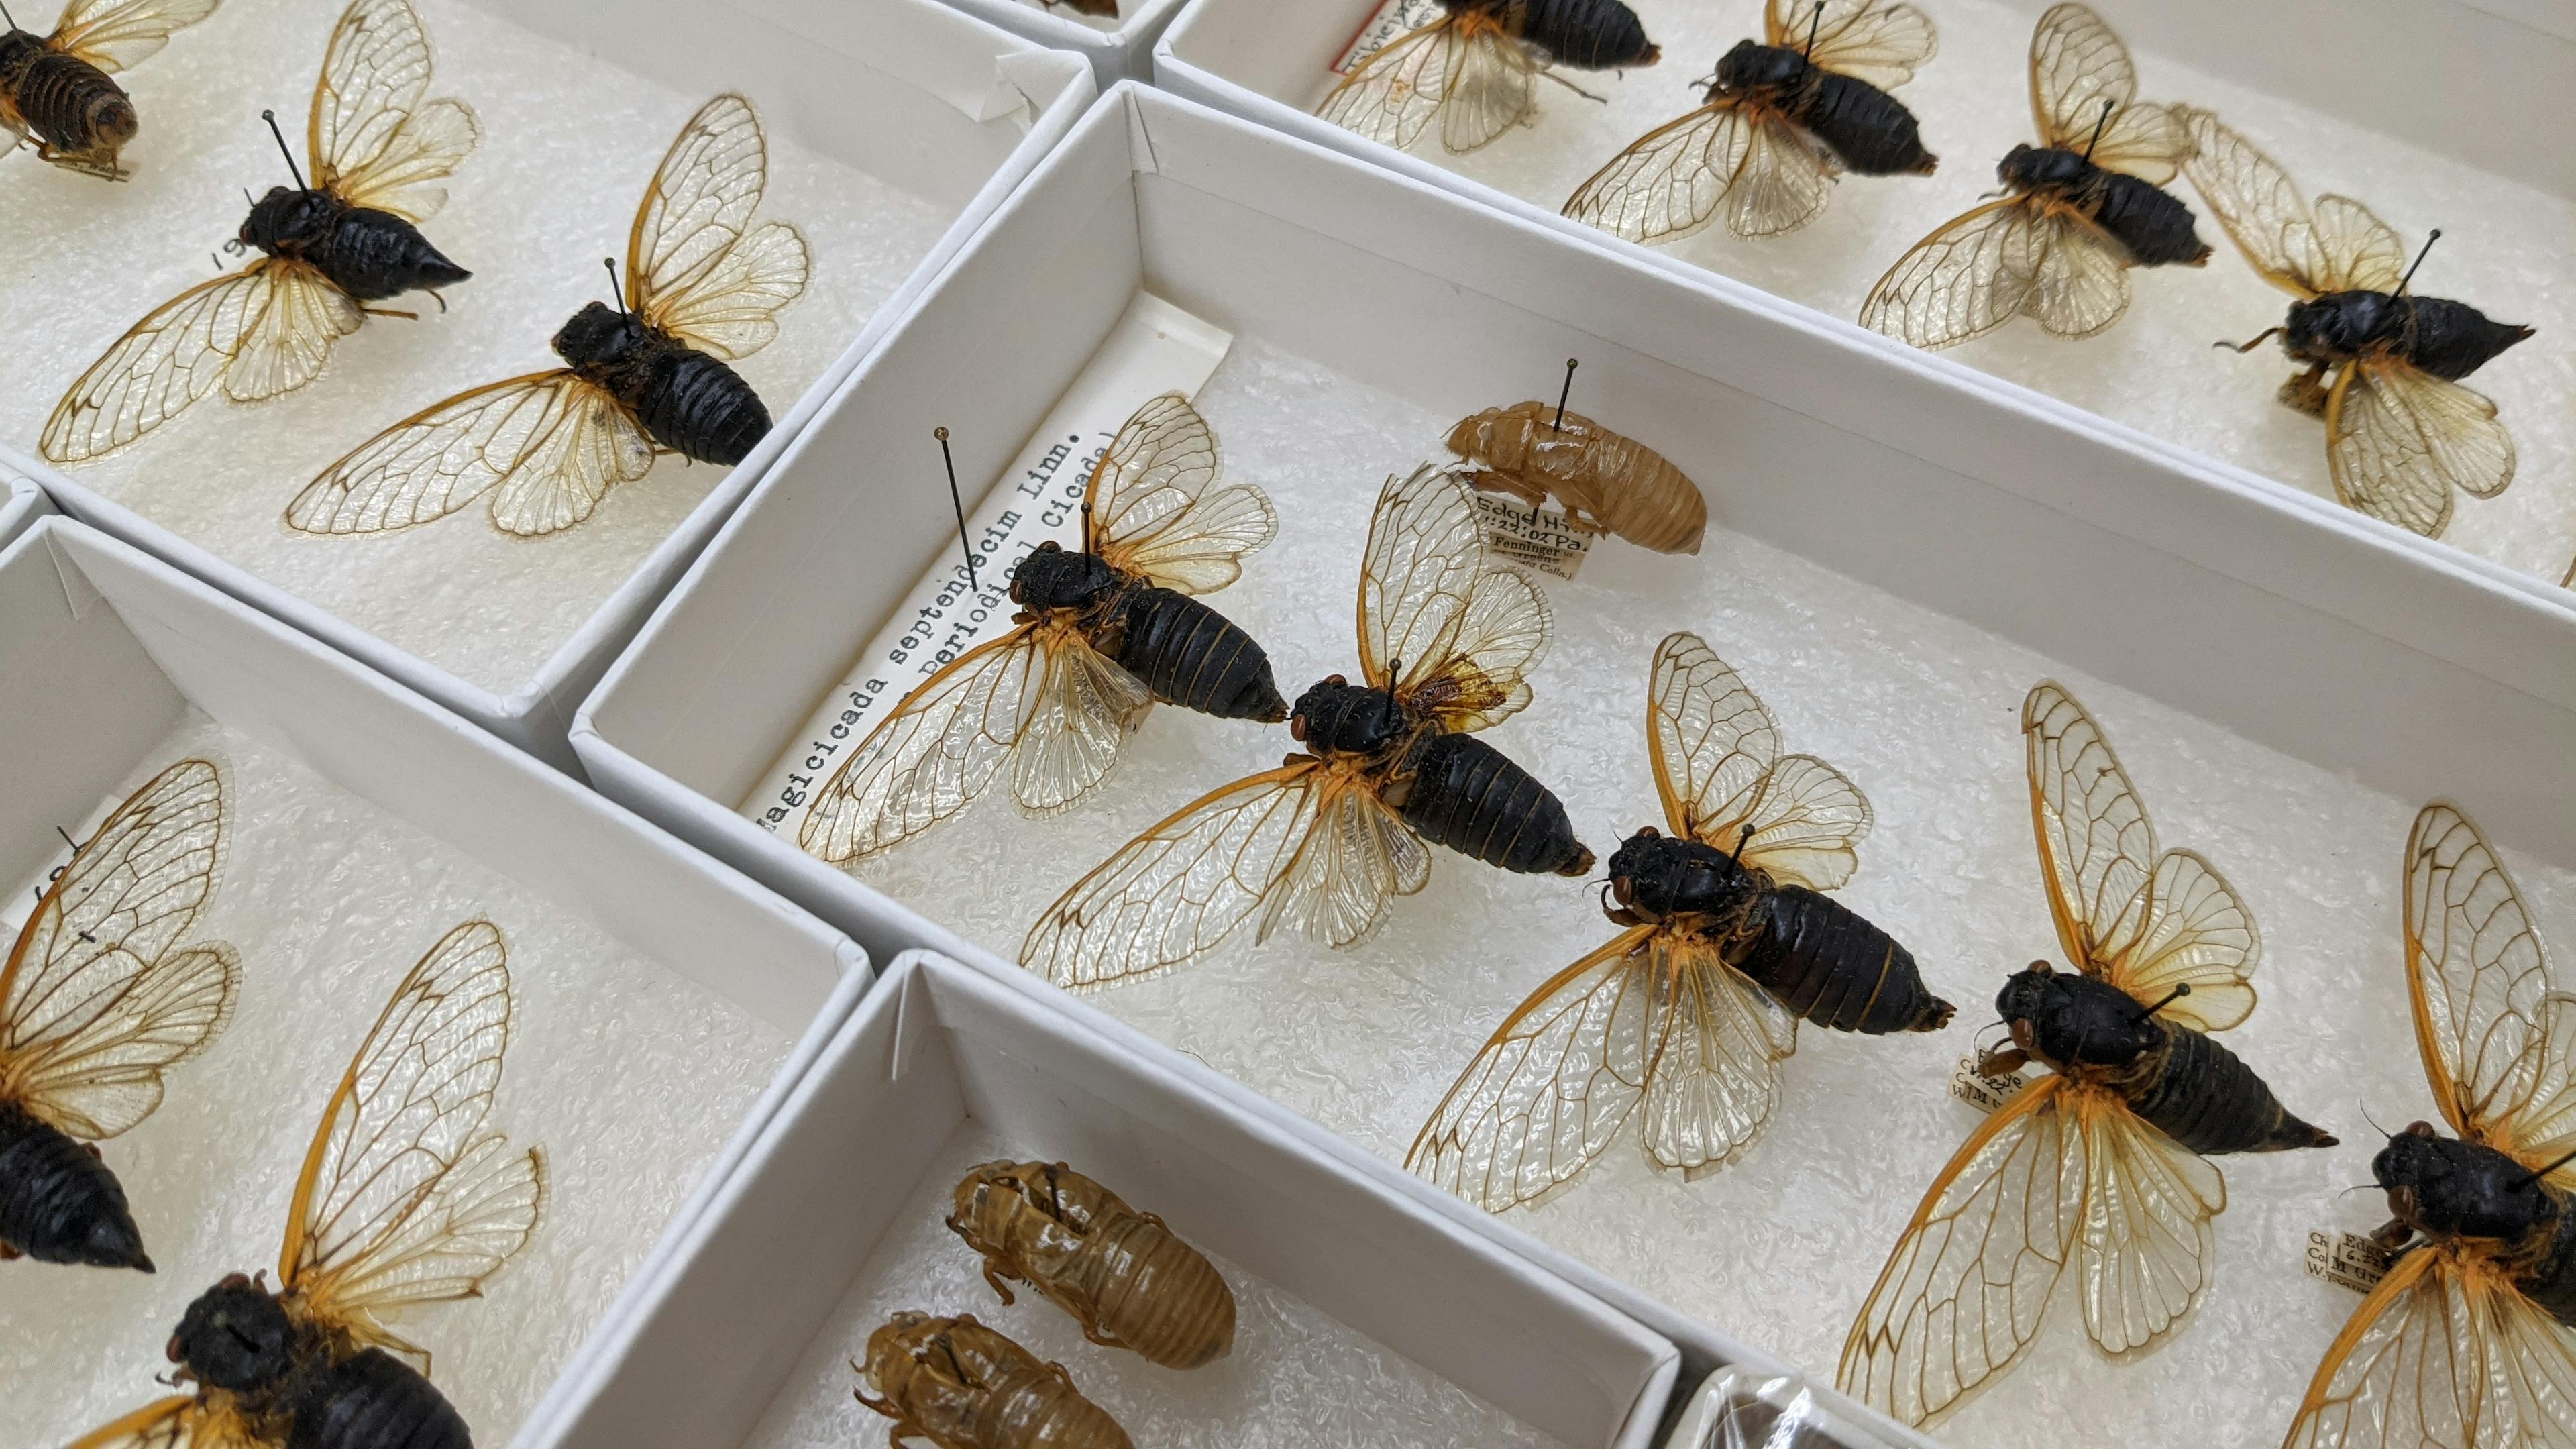 Pinned cicada specimens